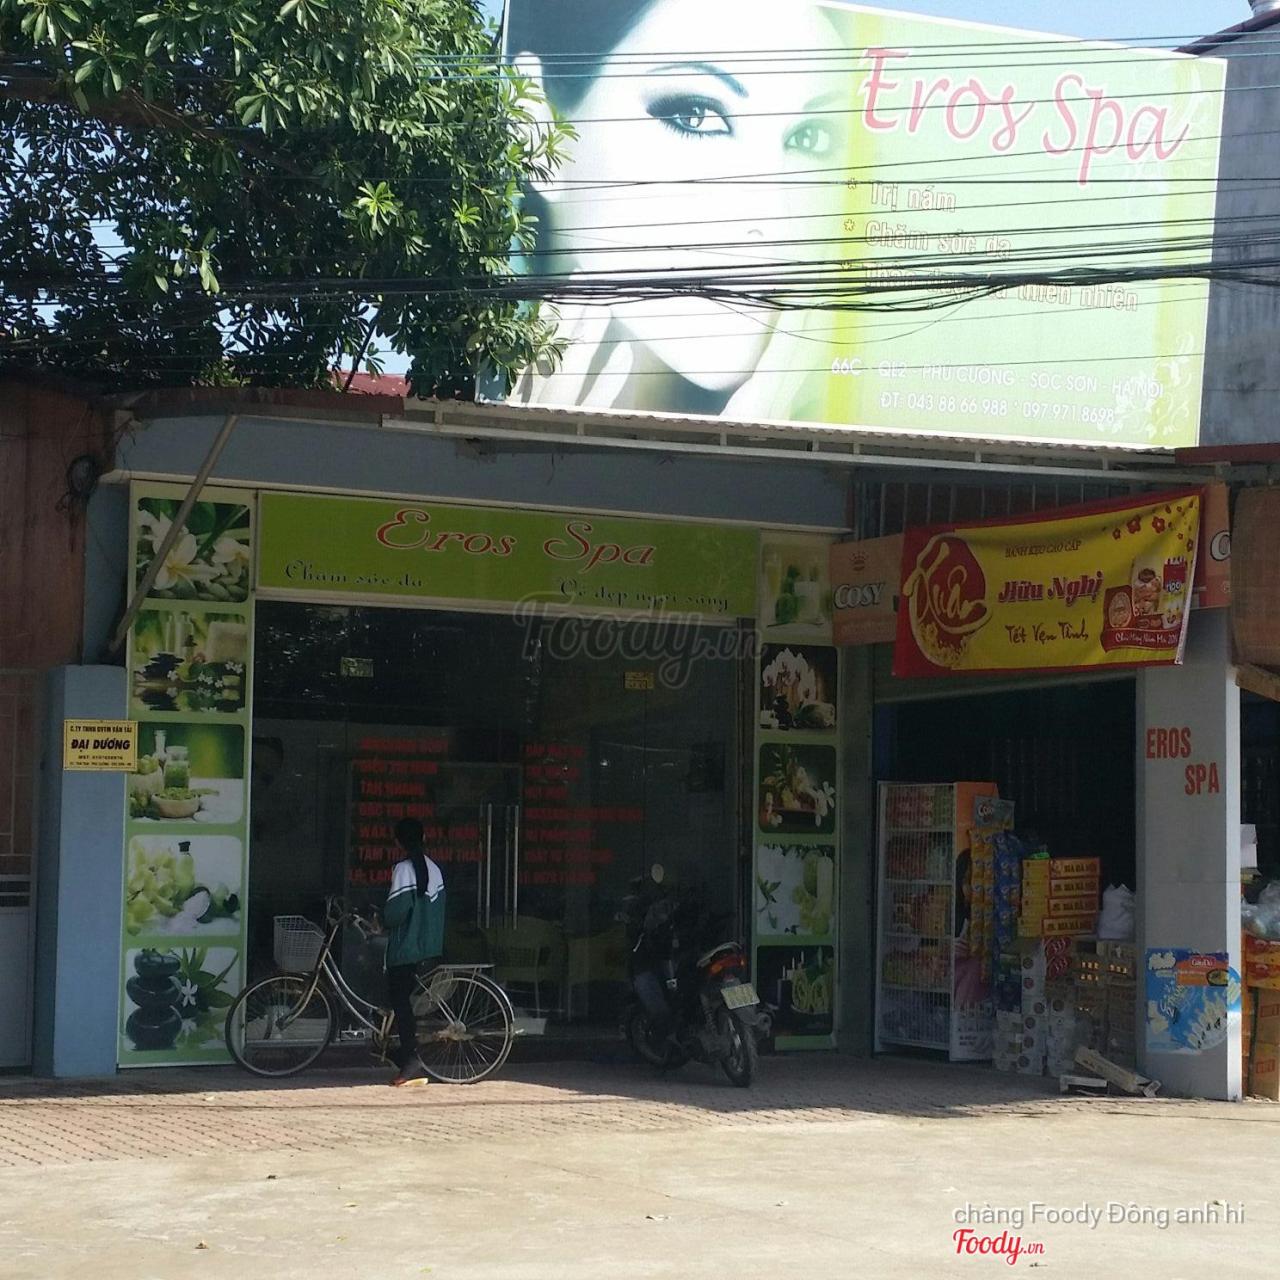 Eros Spa - Ql 2A Ở Huyện Sóc Sơn, Hà Nội | Album Tổng Hợp | Eros Spa - Ql 2A  | Foody.Vn